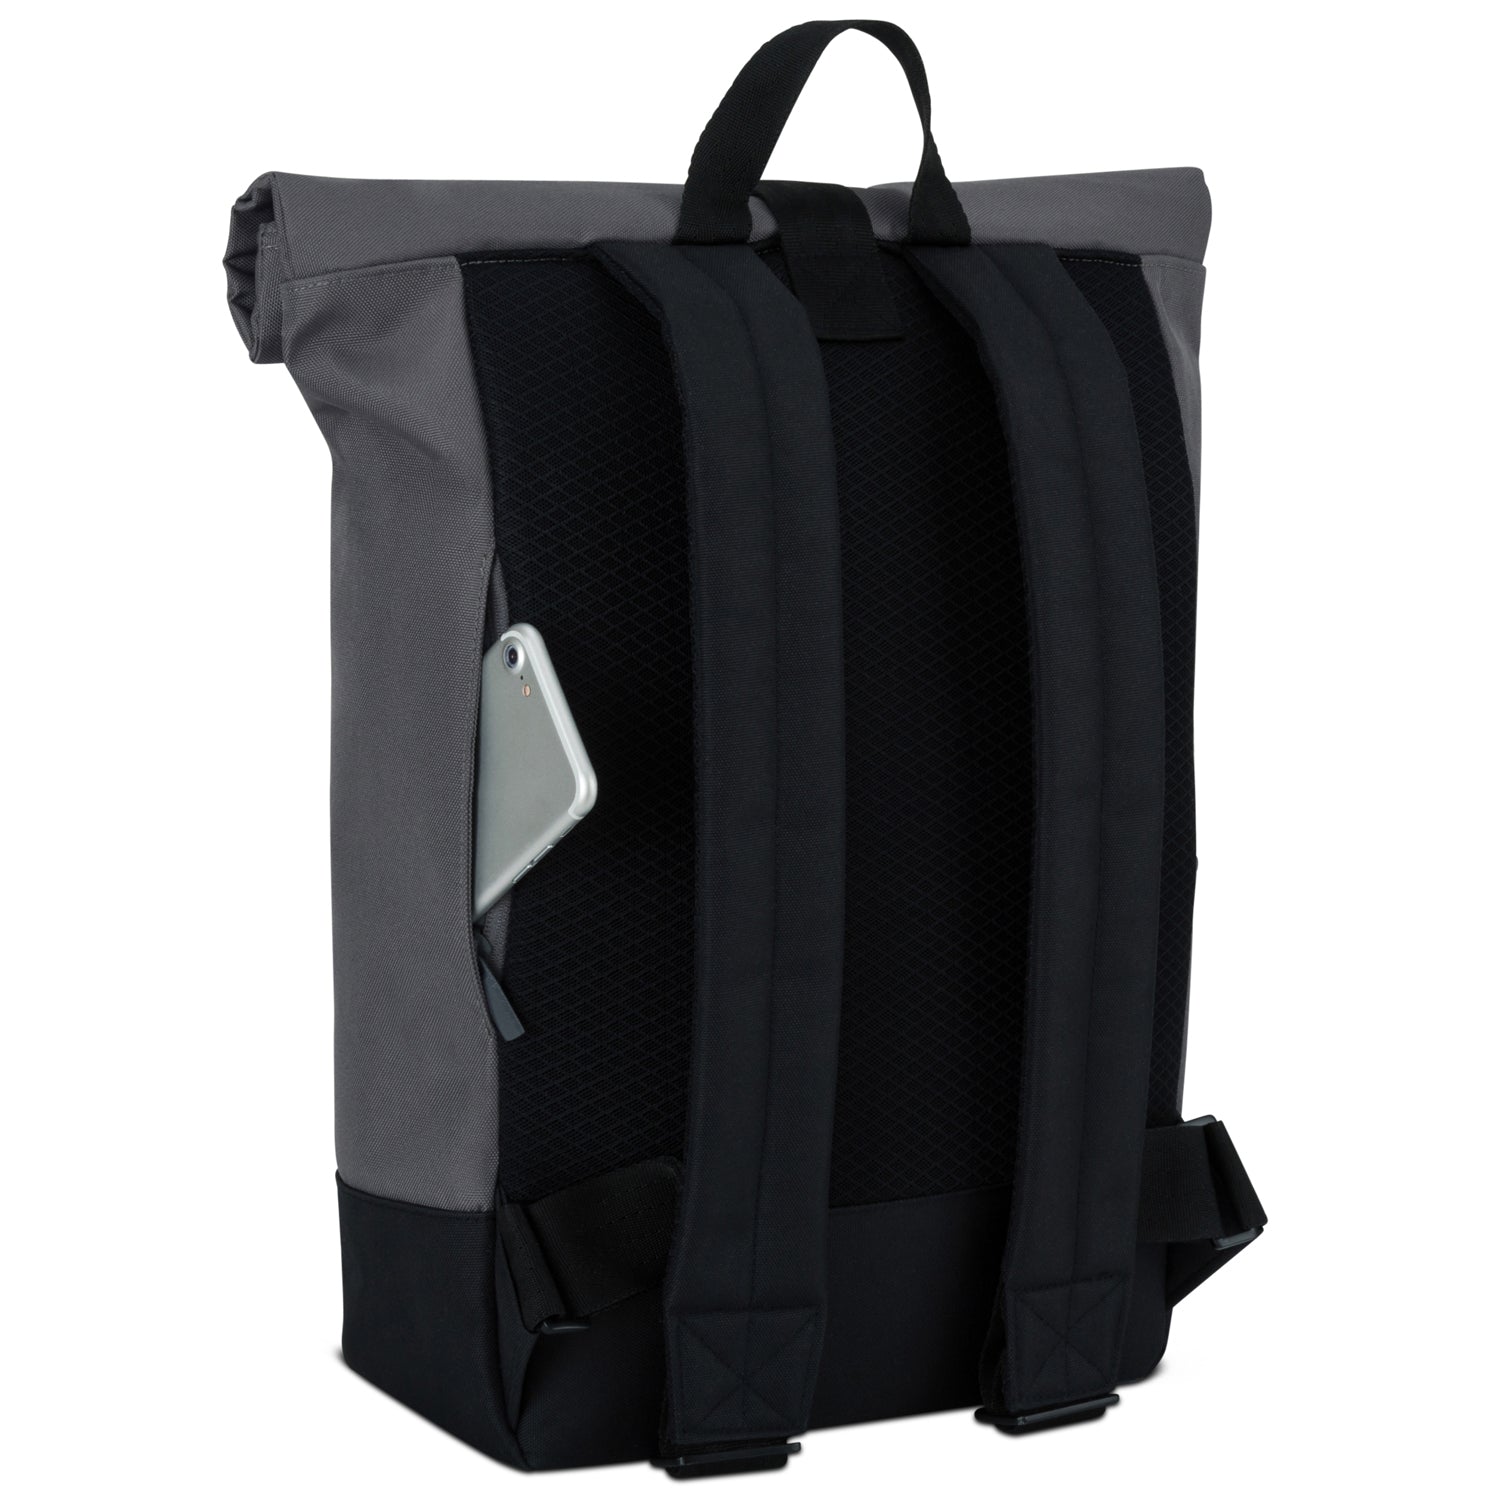 Moderner Rolltop Rucksack für Freizeit, Uni und Reisen